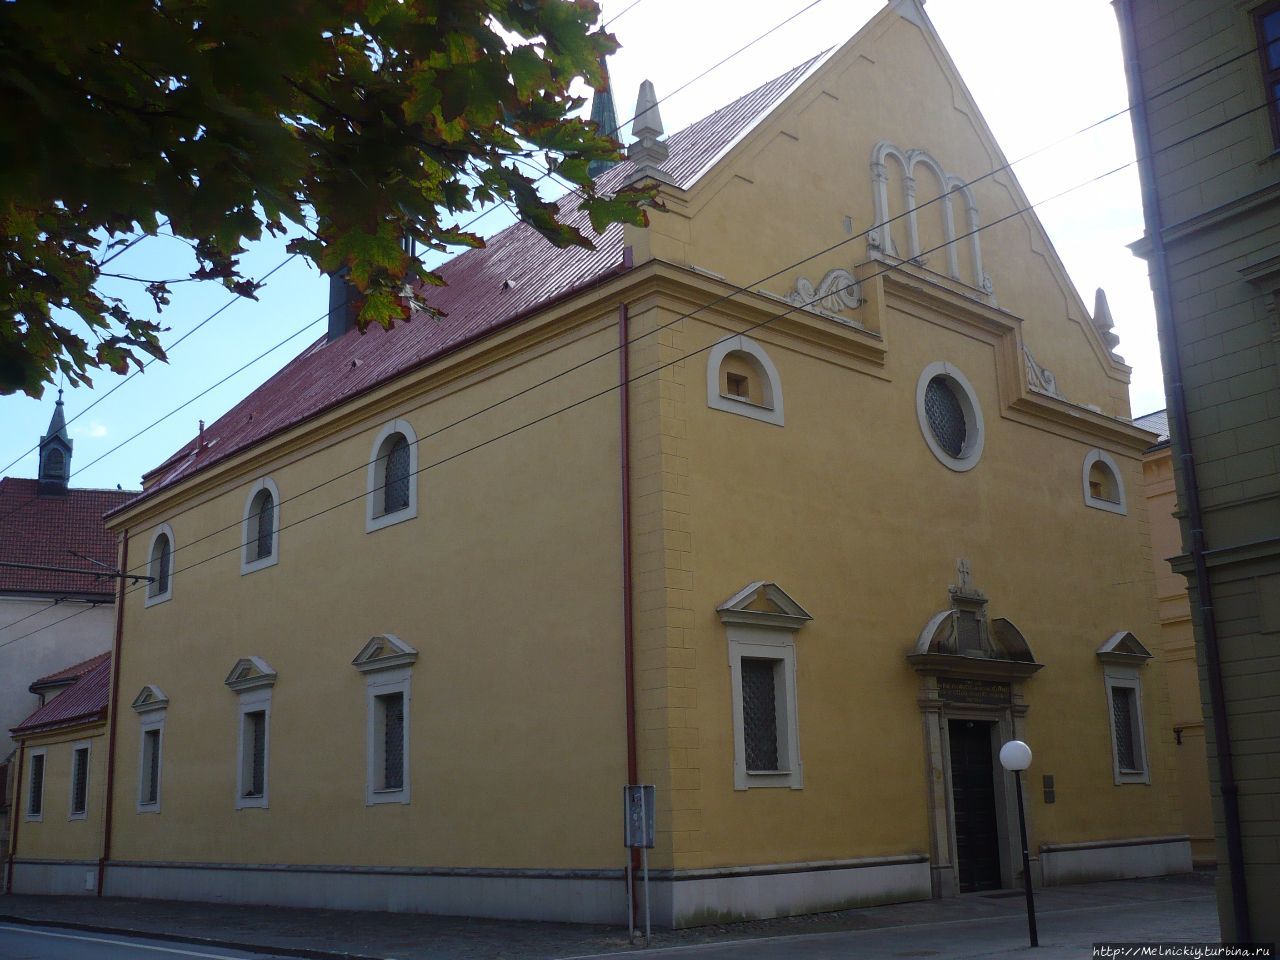 Церковь Святой Троицы / Evangelical Church of the Holy Trinity